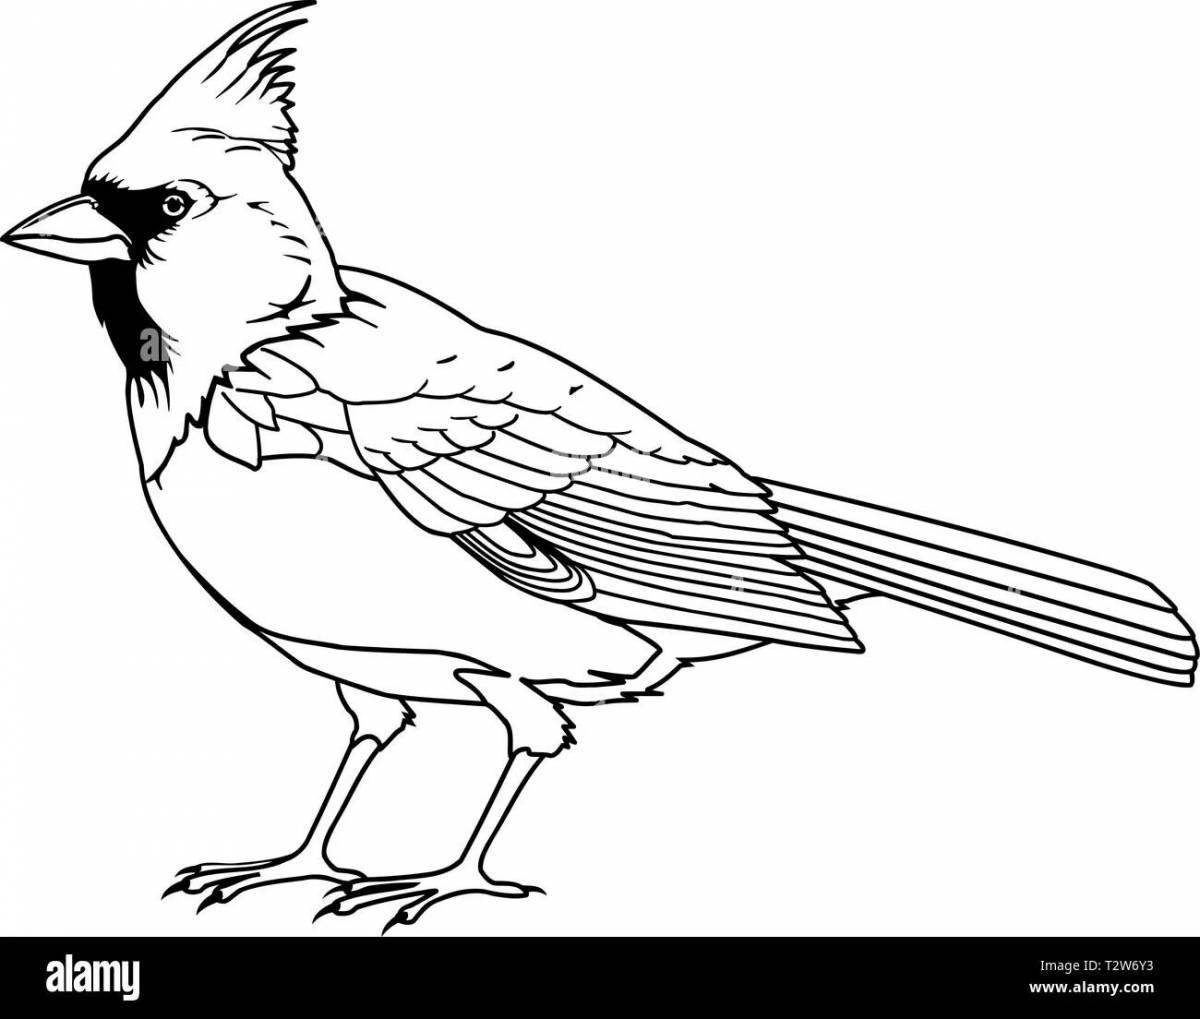 Раскраска изящная птица свиристель